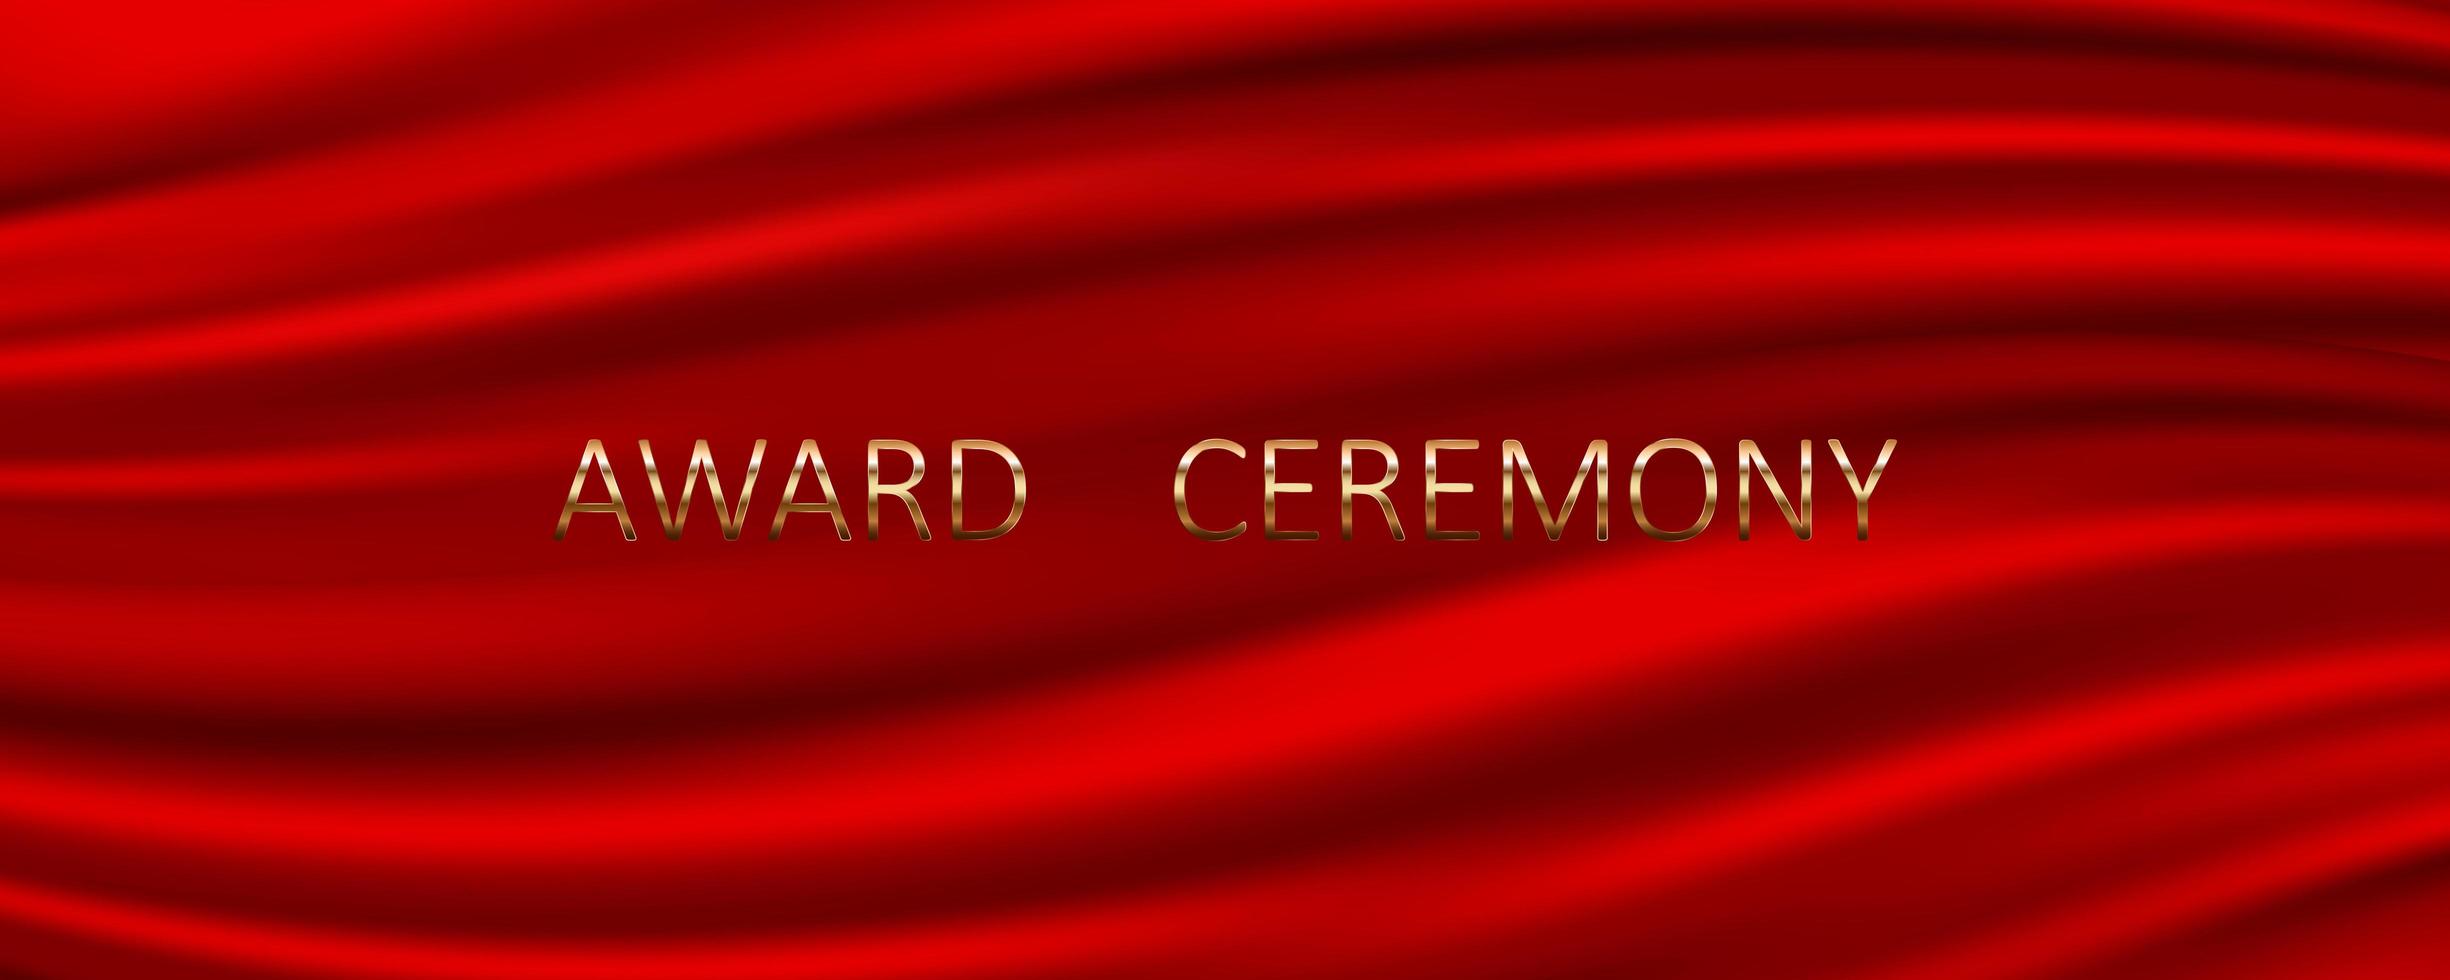 Banner de ceremonia de premiación con fondo de seda roja vector